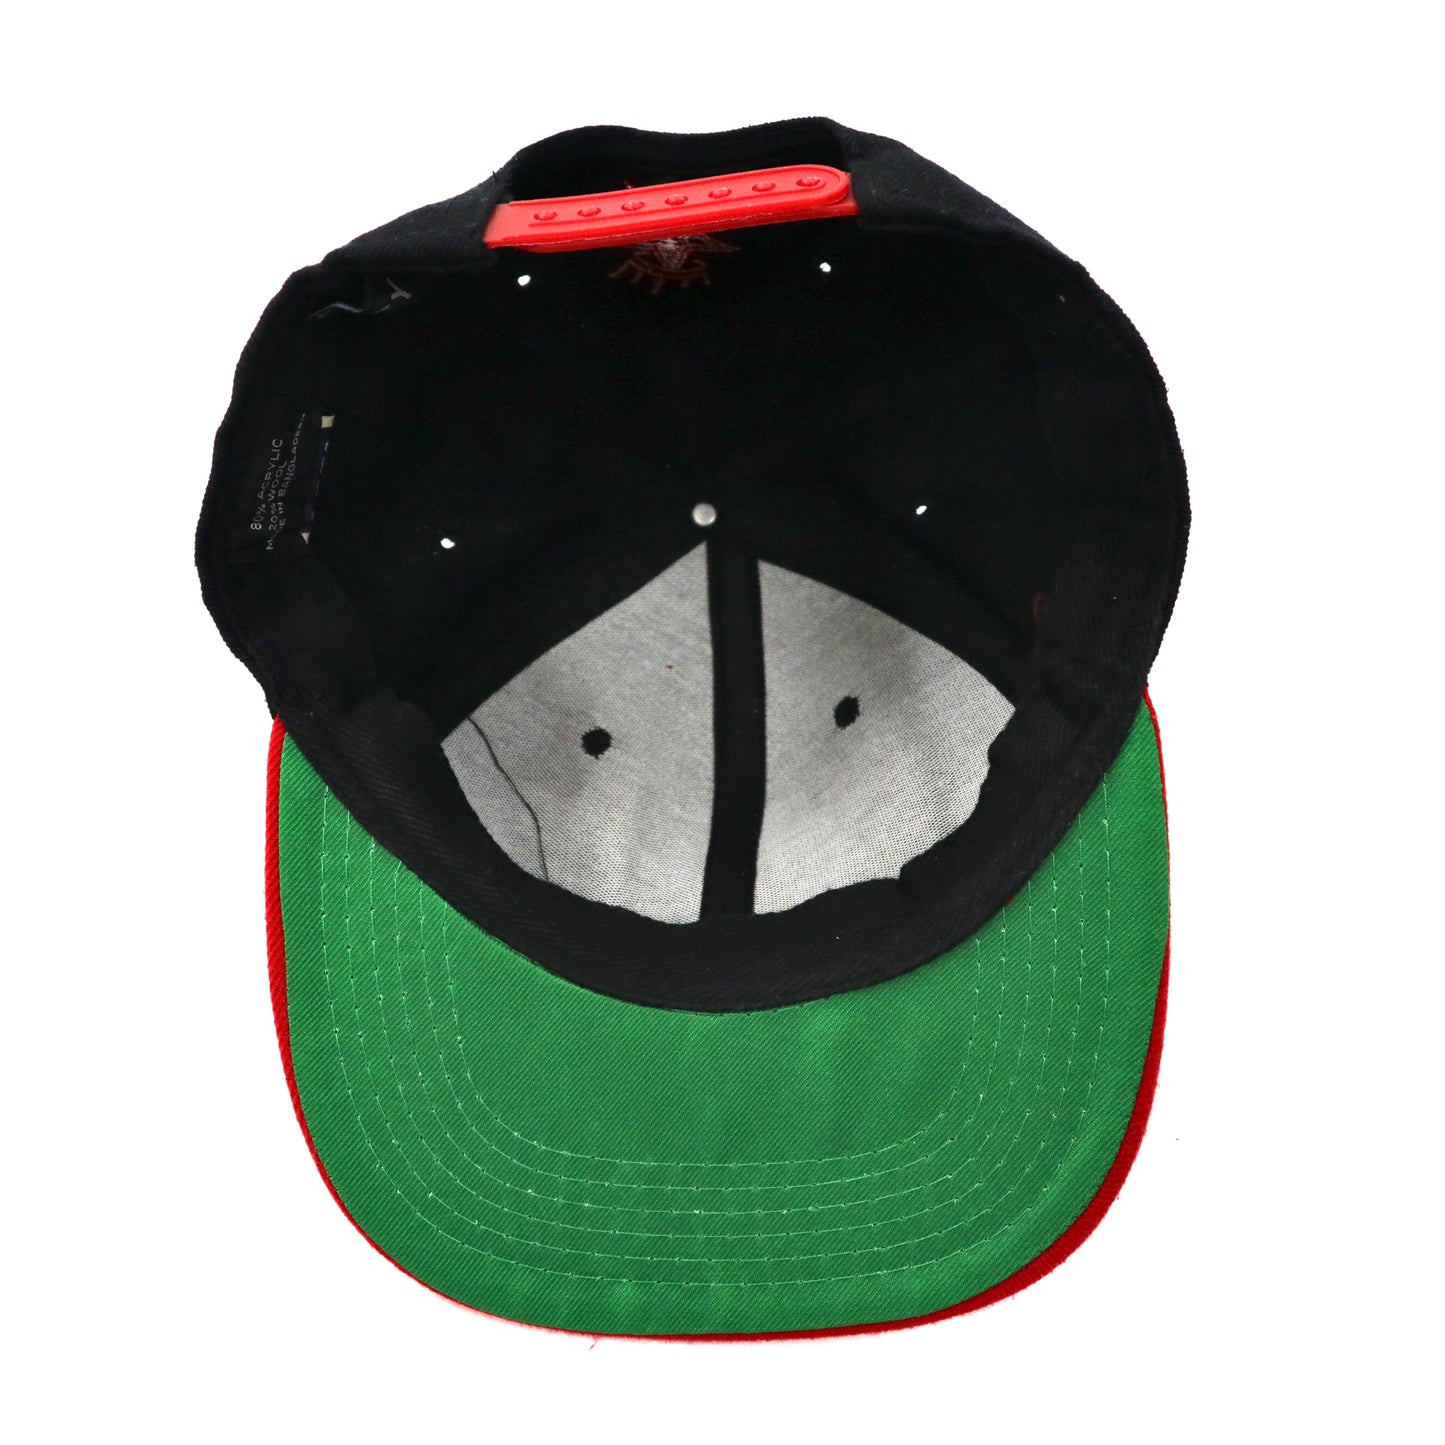 OBEY ベースボールキャップ スナップバック FREE ブラック アクリル ロゴ刺繍 Athletics Snap-Back Hat